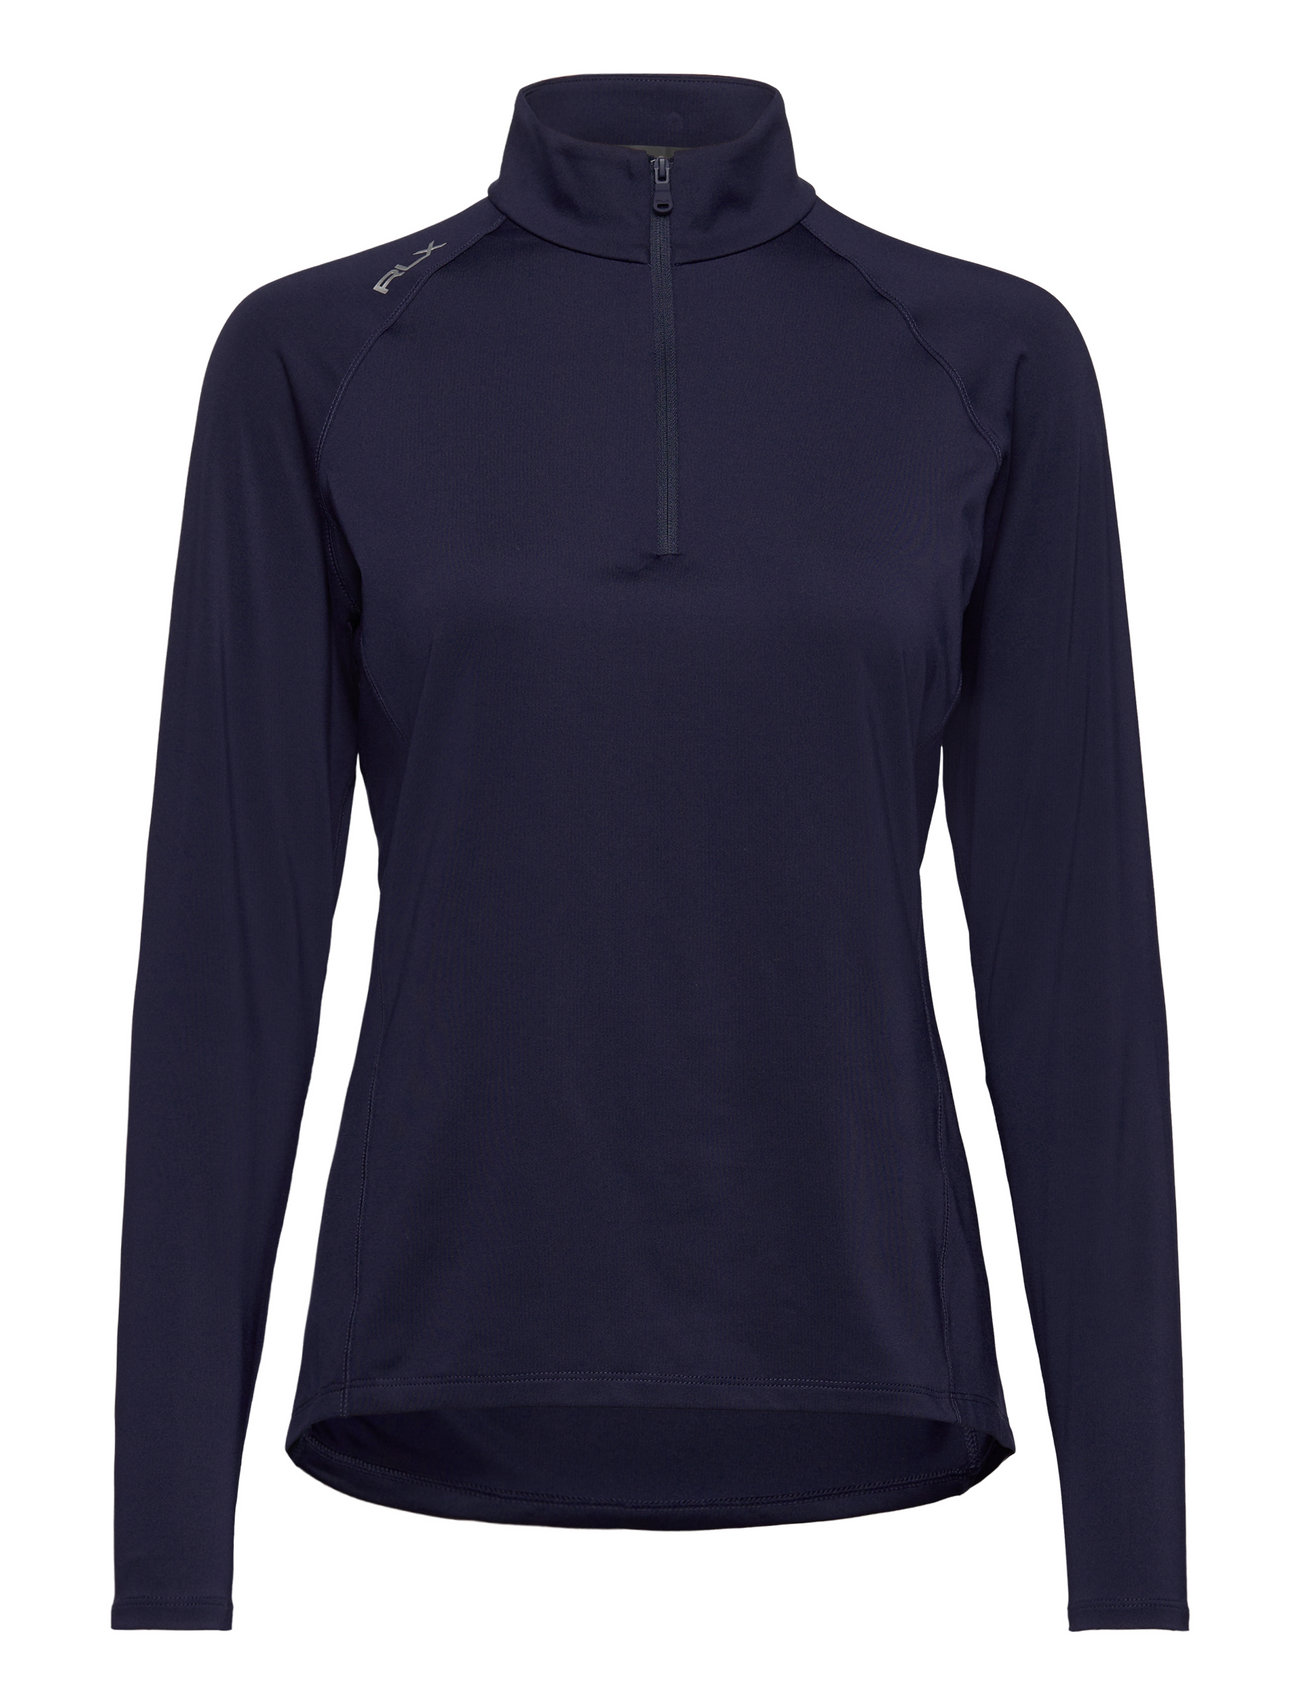 Jersey Quarter-Zip Pullover Sport Sweat-shirts & Hoodies Sweat-shirts Navy Ralph Lauren Golf